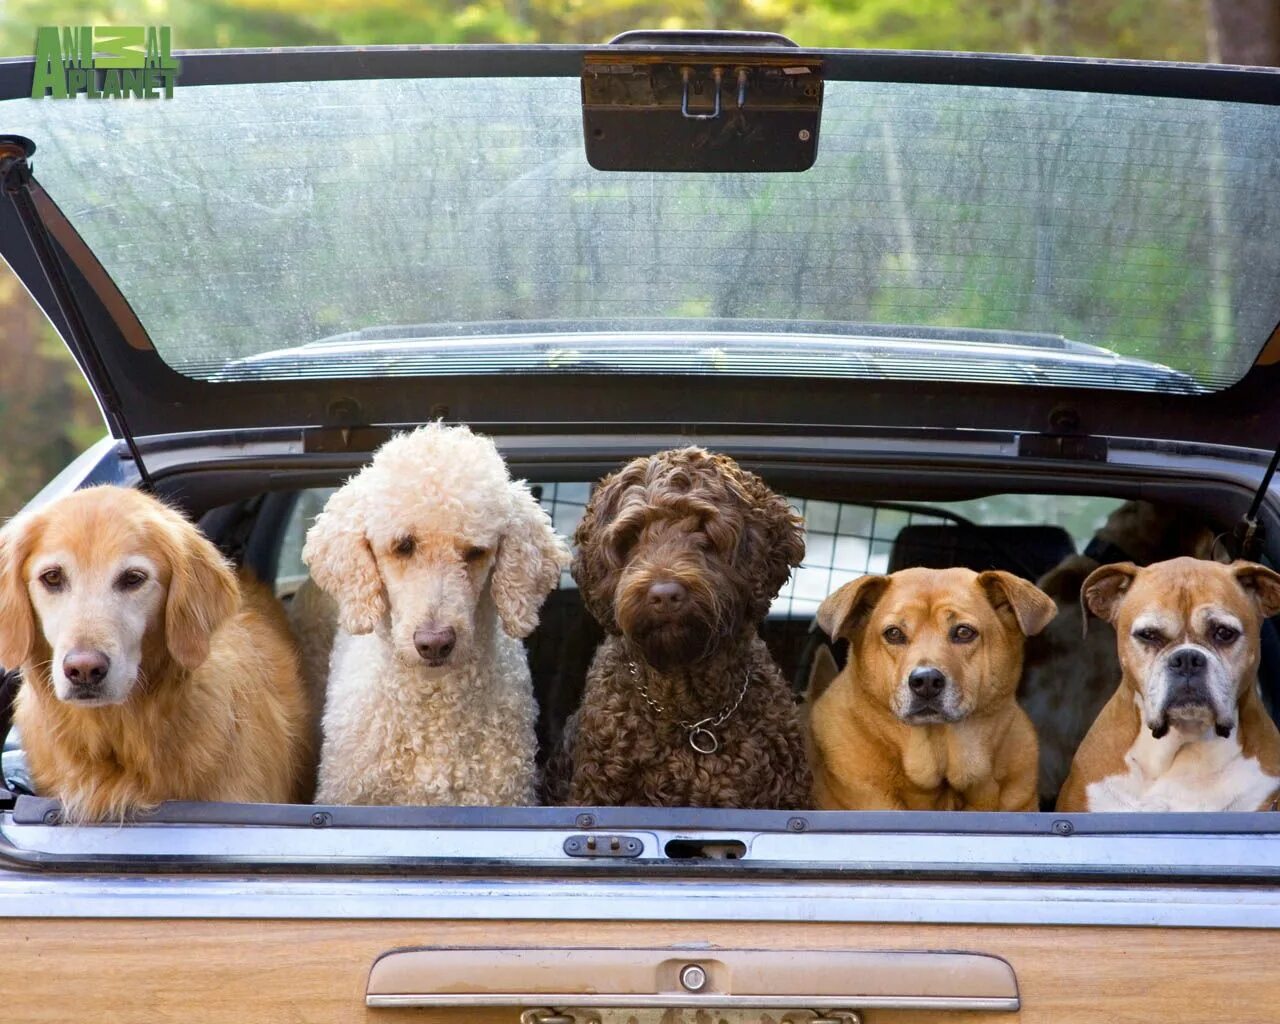 Now only dogs. Животные в автомобиле. Автомобиль собака. Собака за рулем. Собака едет в машине.